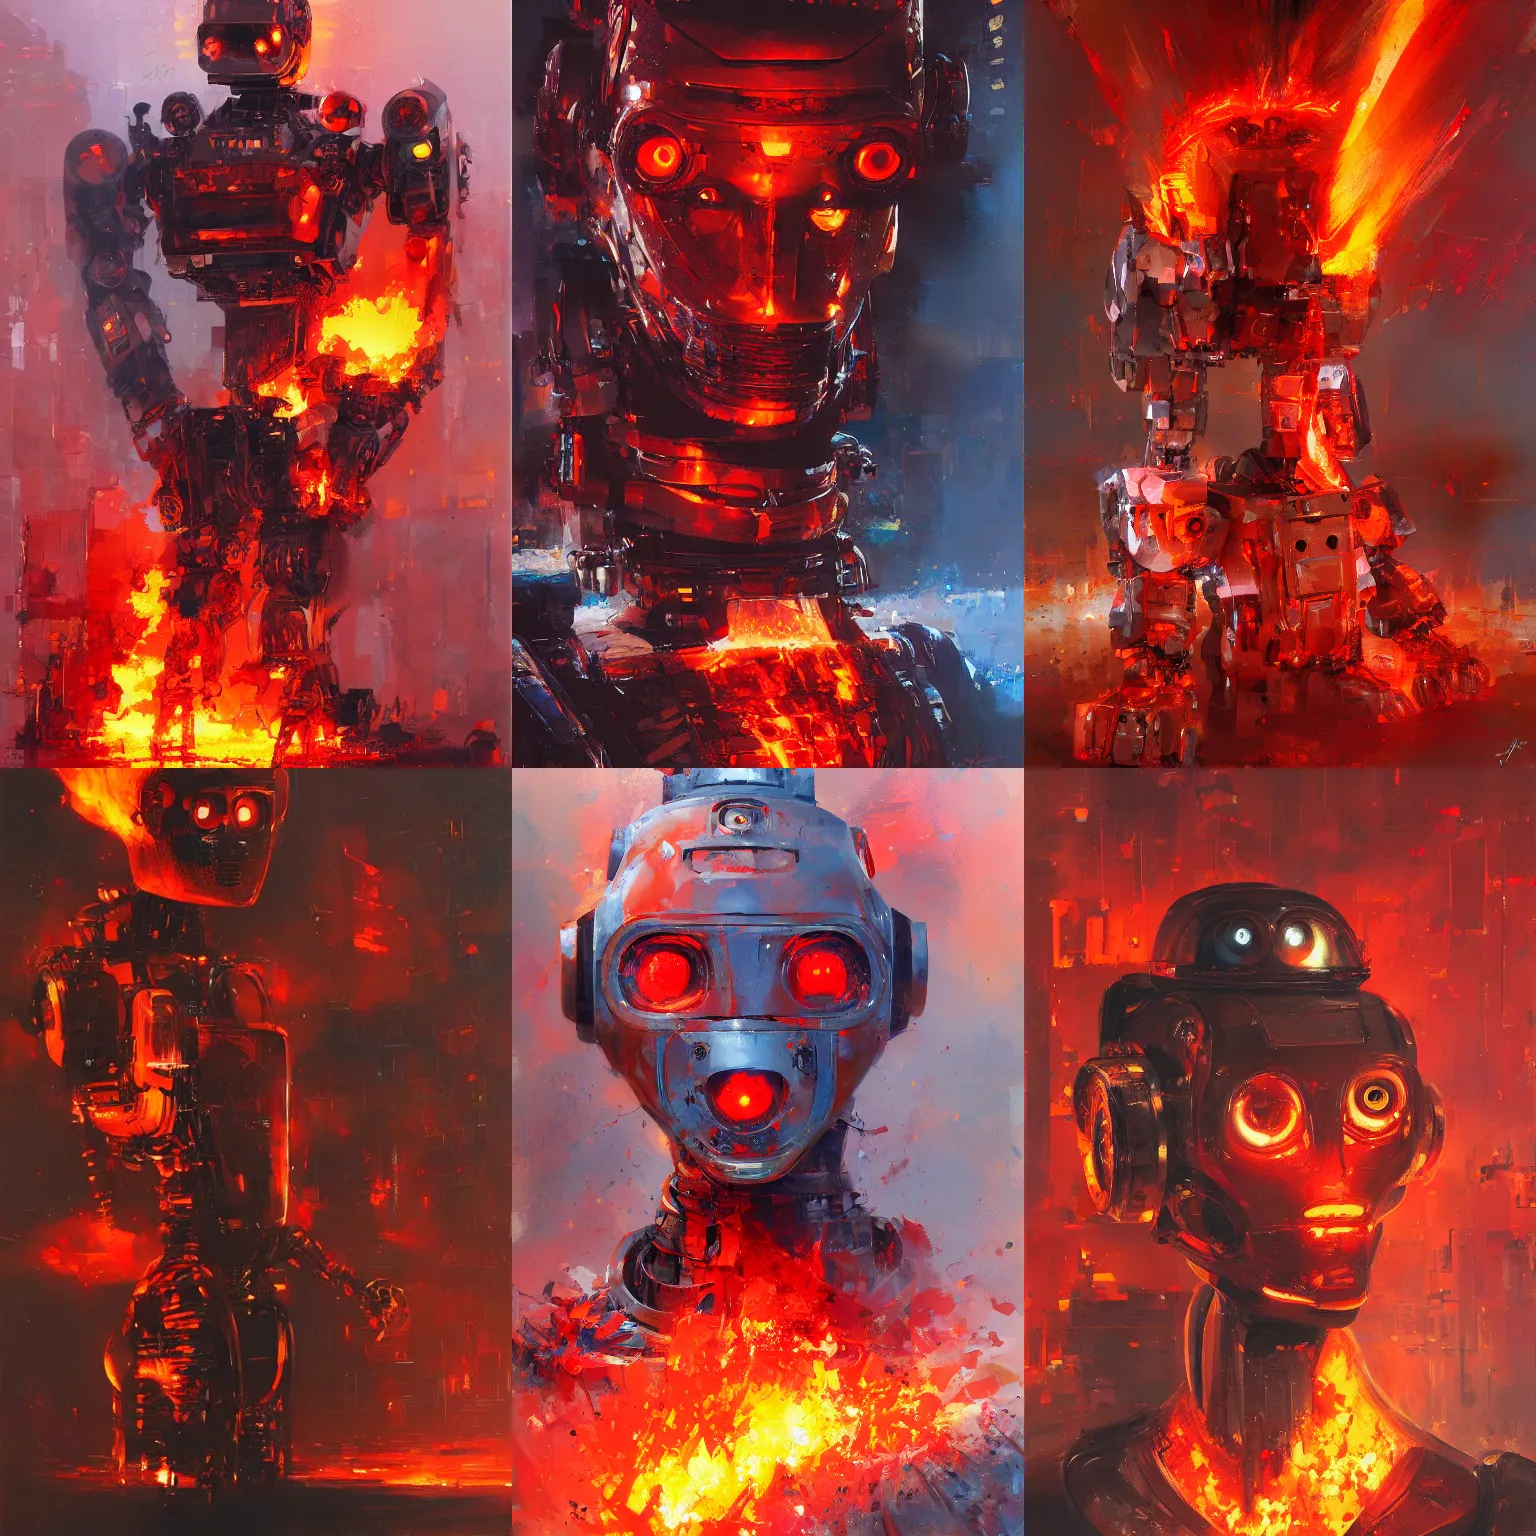 Prompt: portrait of a robot on fire, red eyes, embers, by john berkey, artstation